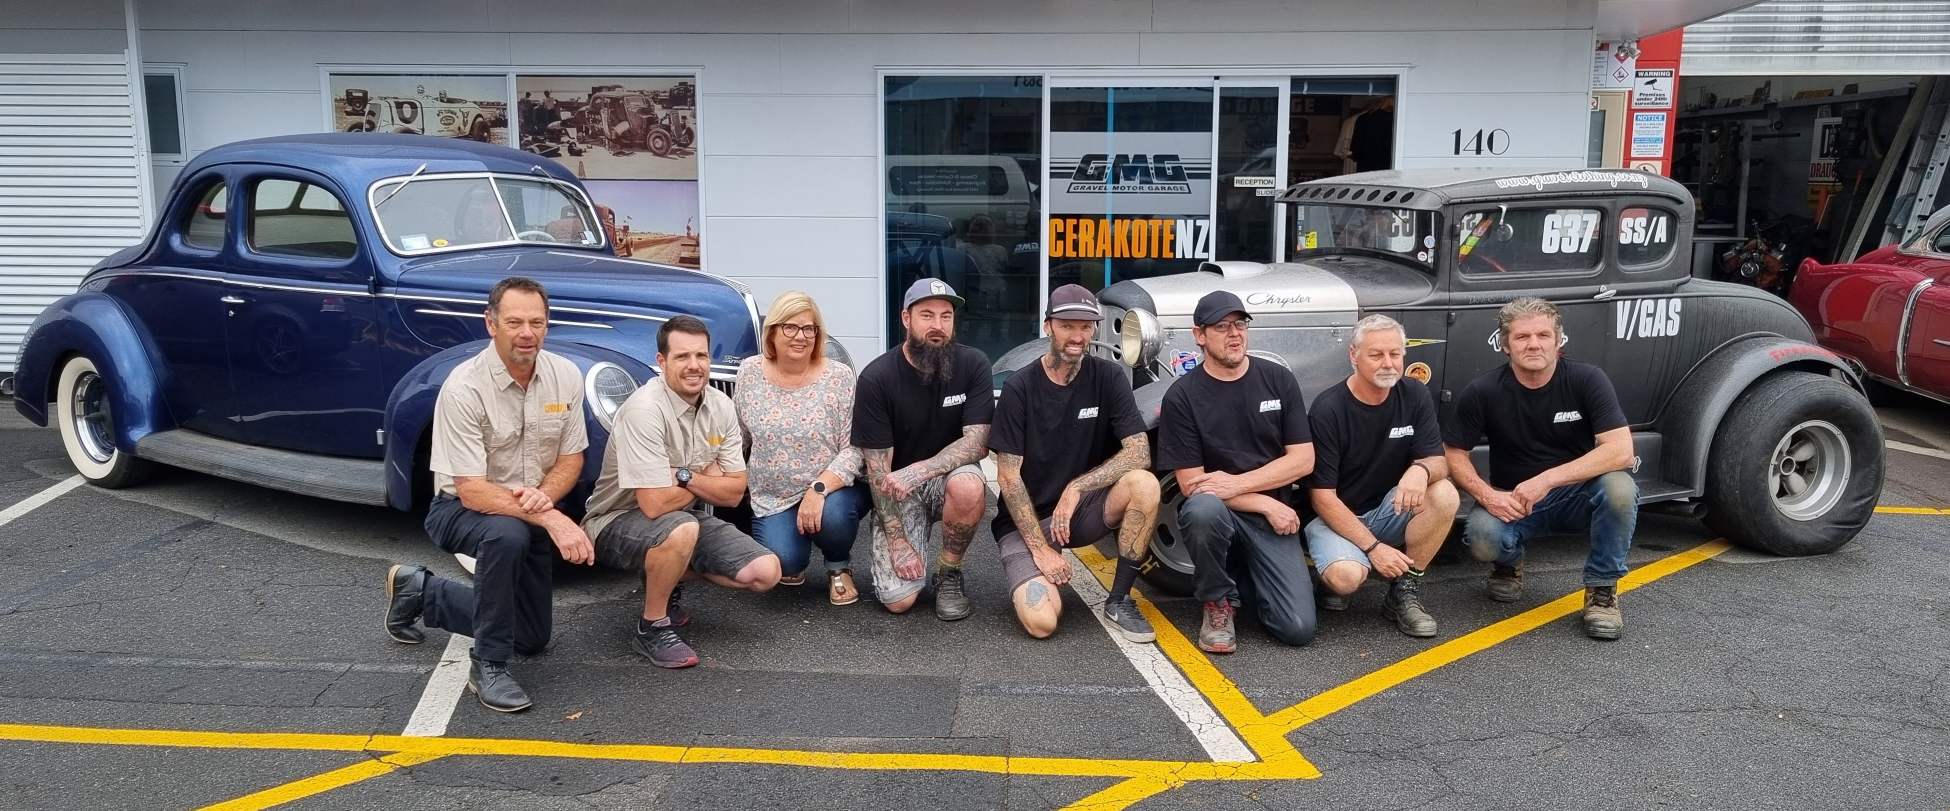 The team at Gravel Motor Garage & Cerakote NZ